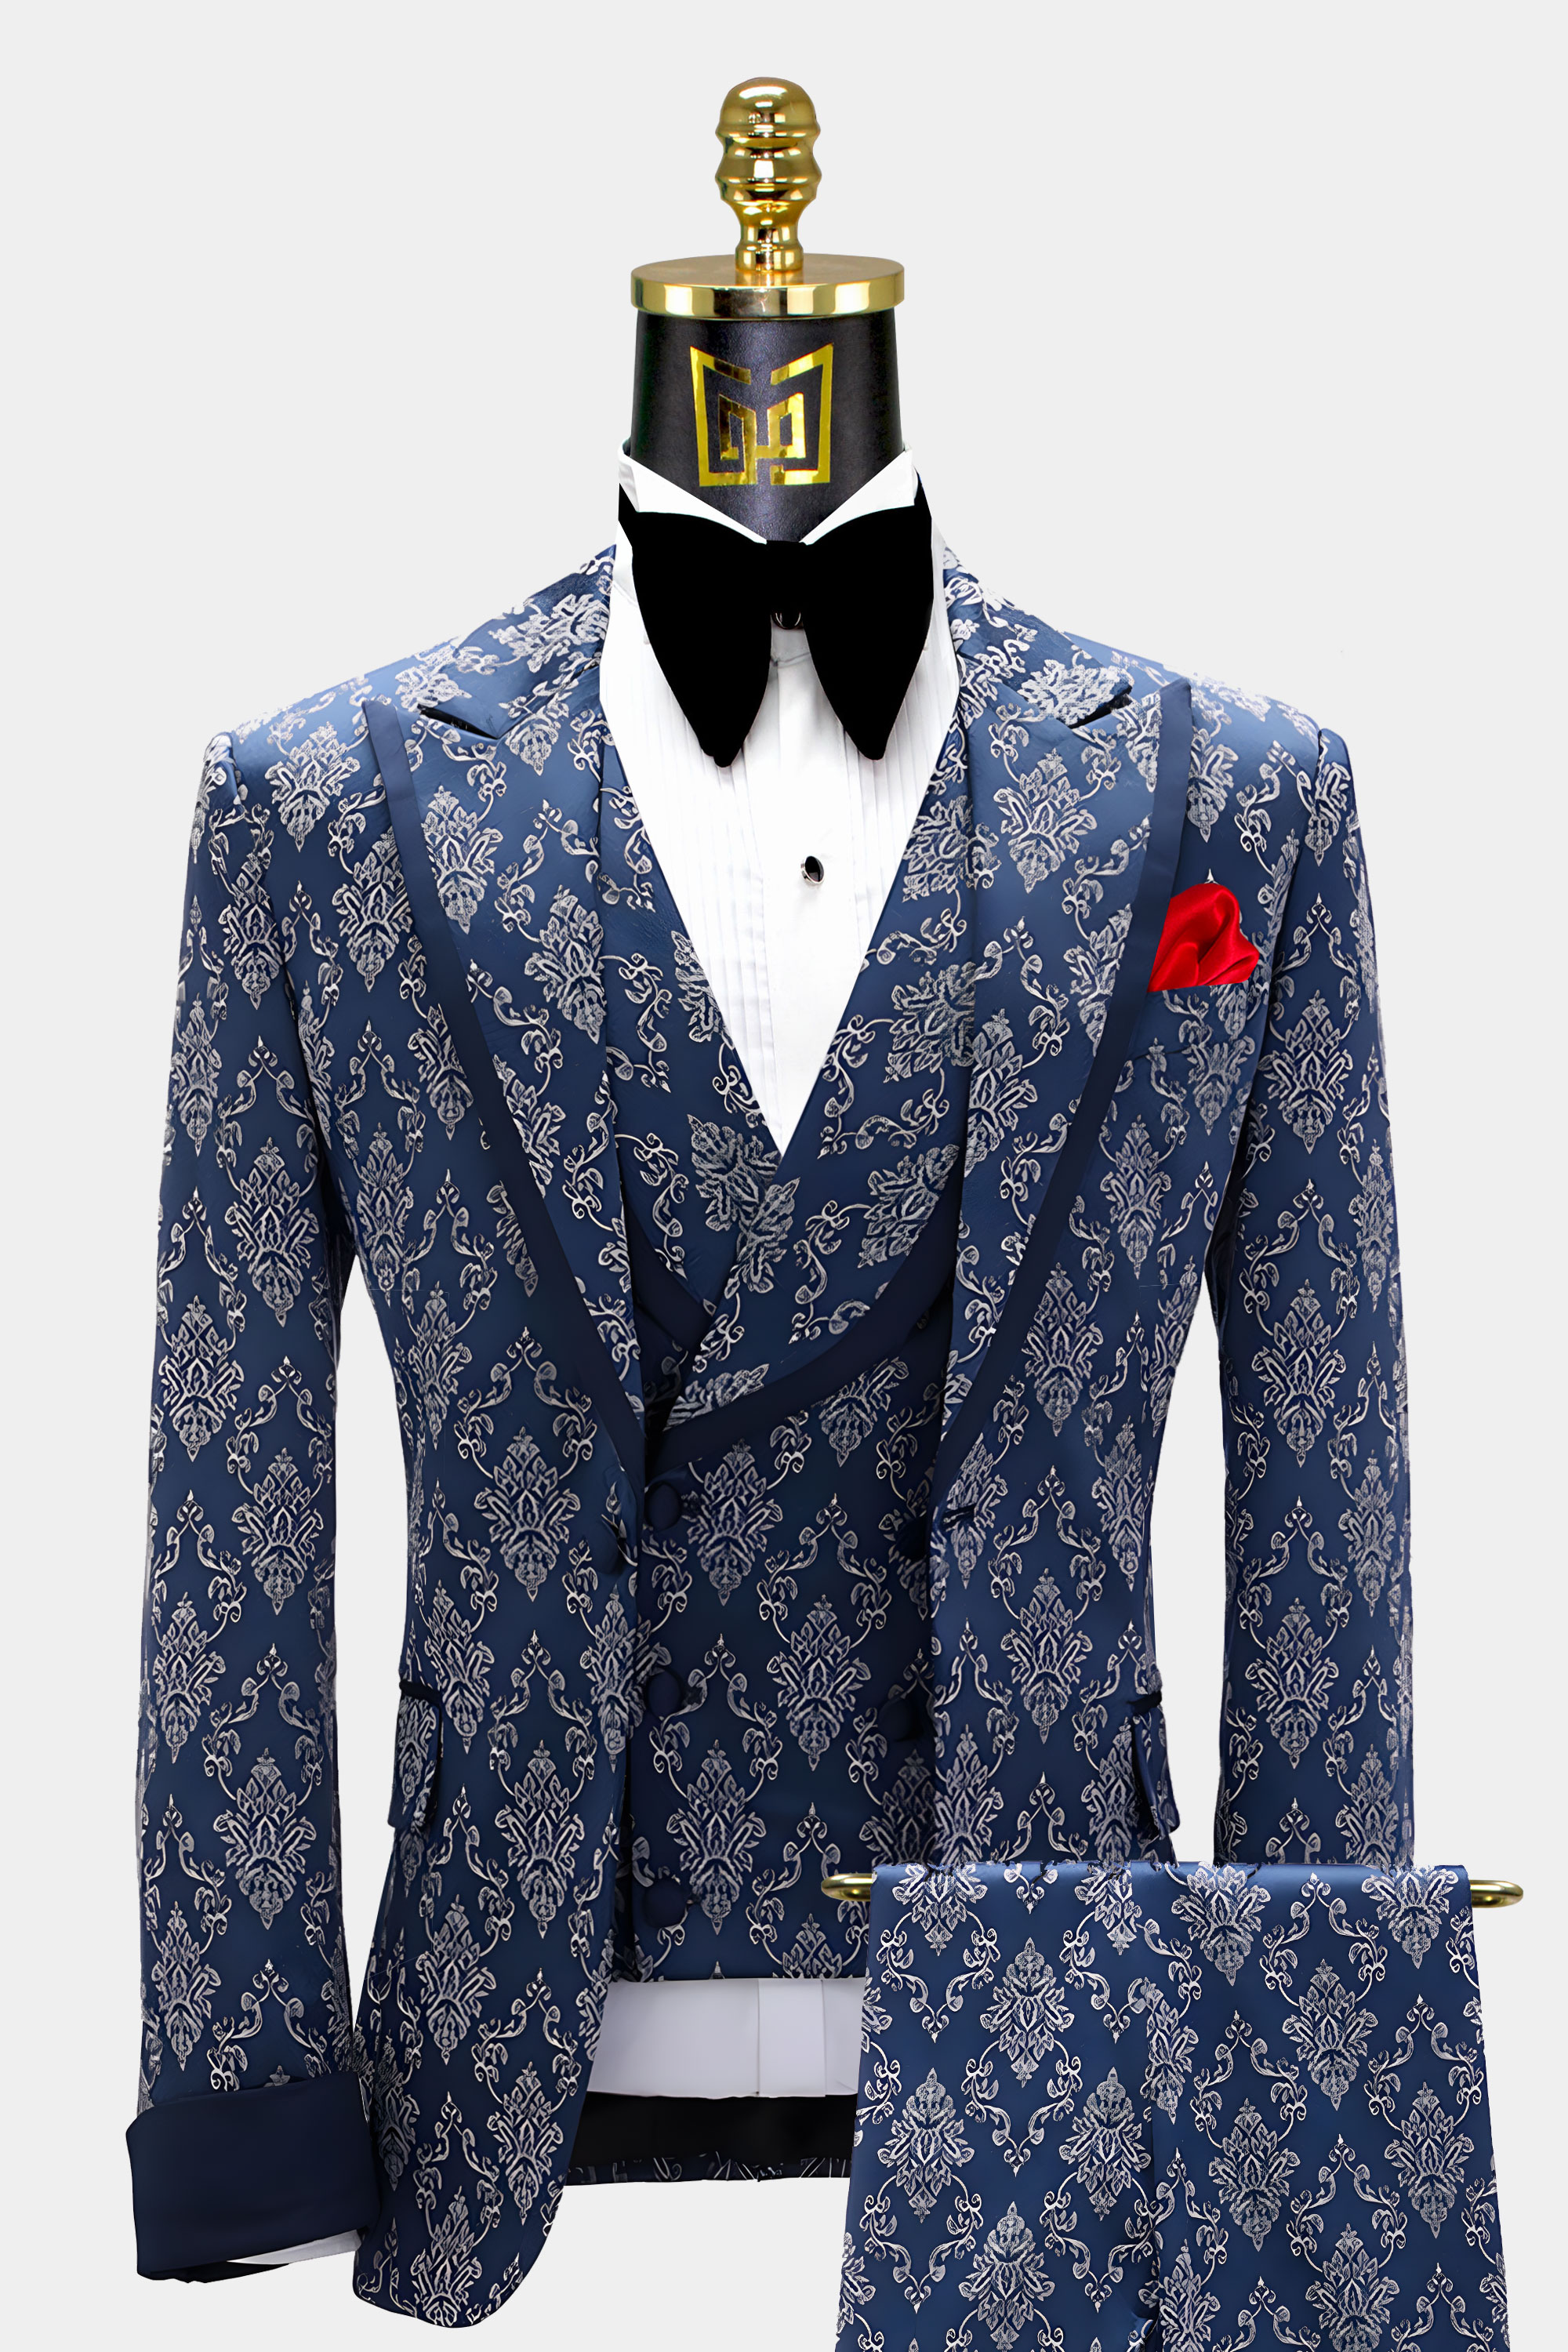 Navy Blue and Grey Tuxedo Suit | Gentleman's Guru